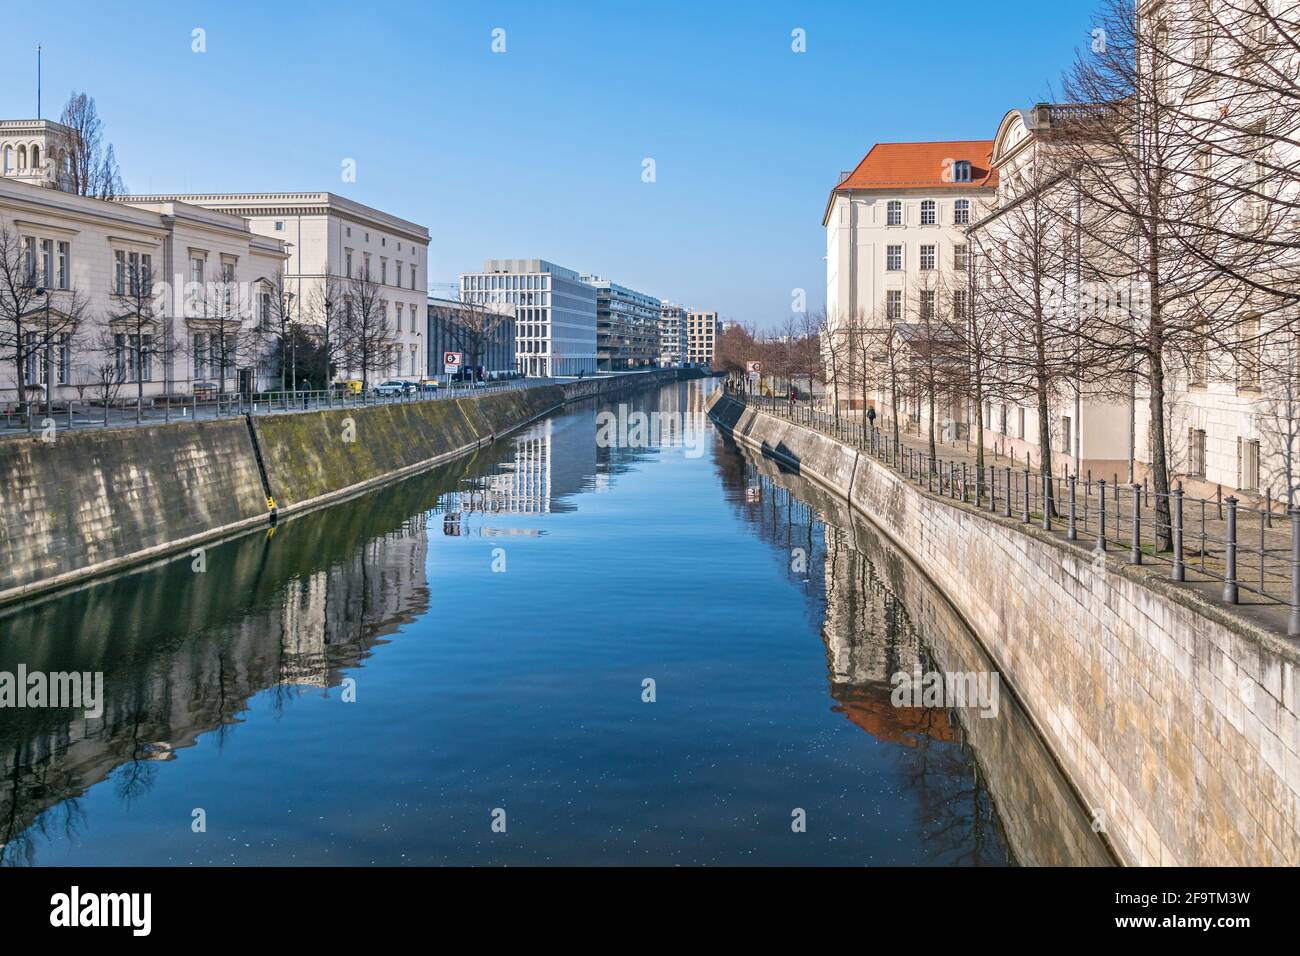 Berlin, Allemagne - 1er mars 2021 : canal de navigation Berlin-Spandau avec le bâtiment de style classicien tardif de Hamburger Bahnhof et le ministère fédéral de l'E Banque D'Images